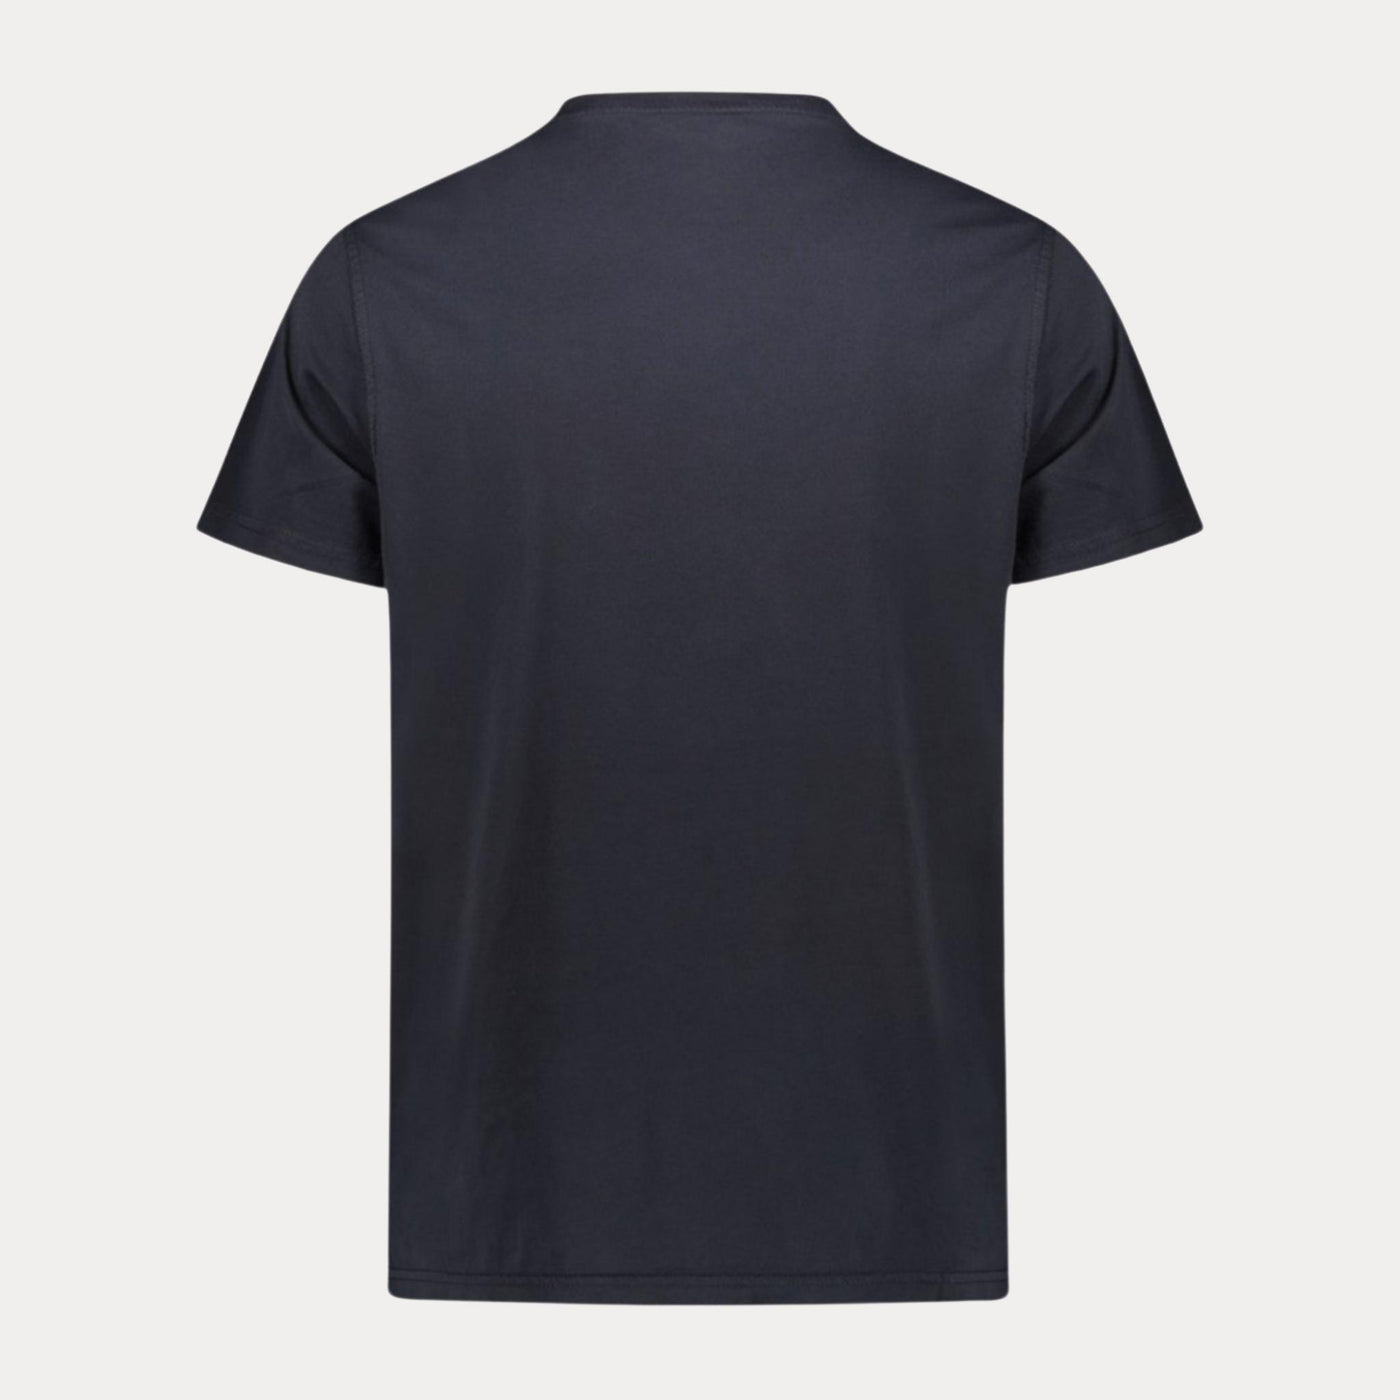 T-shirt Uomo in tinta unita con scritta in contrasto navy retro